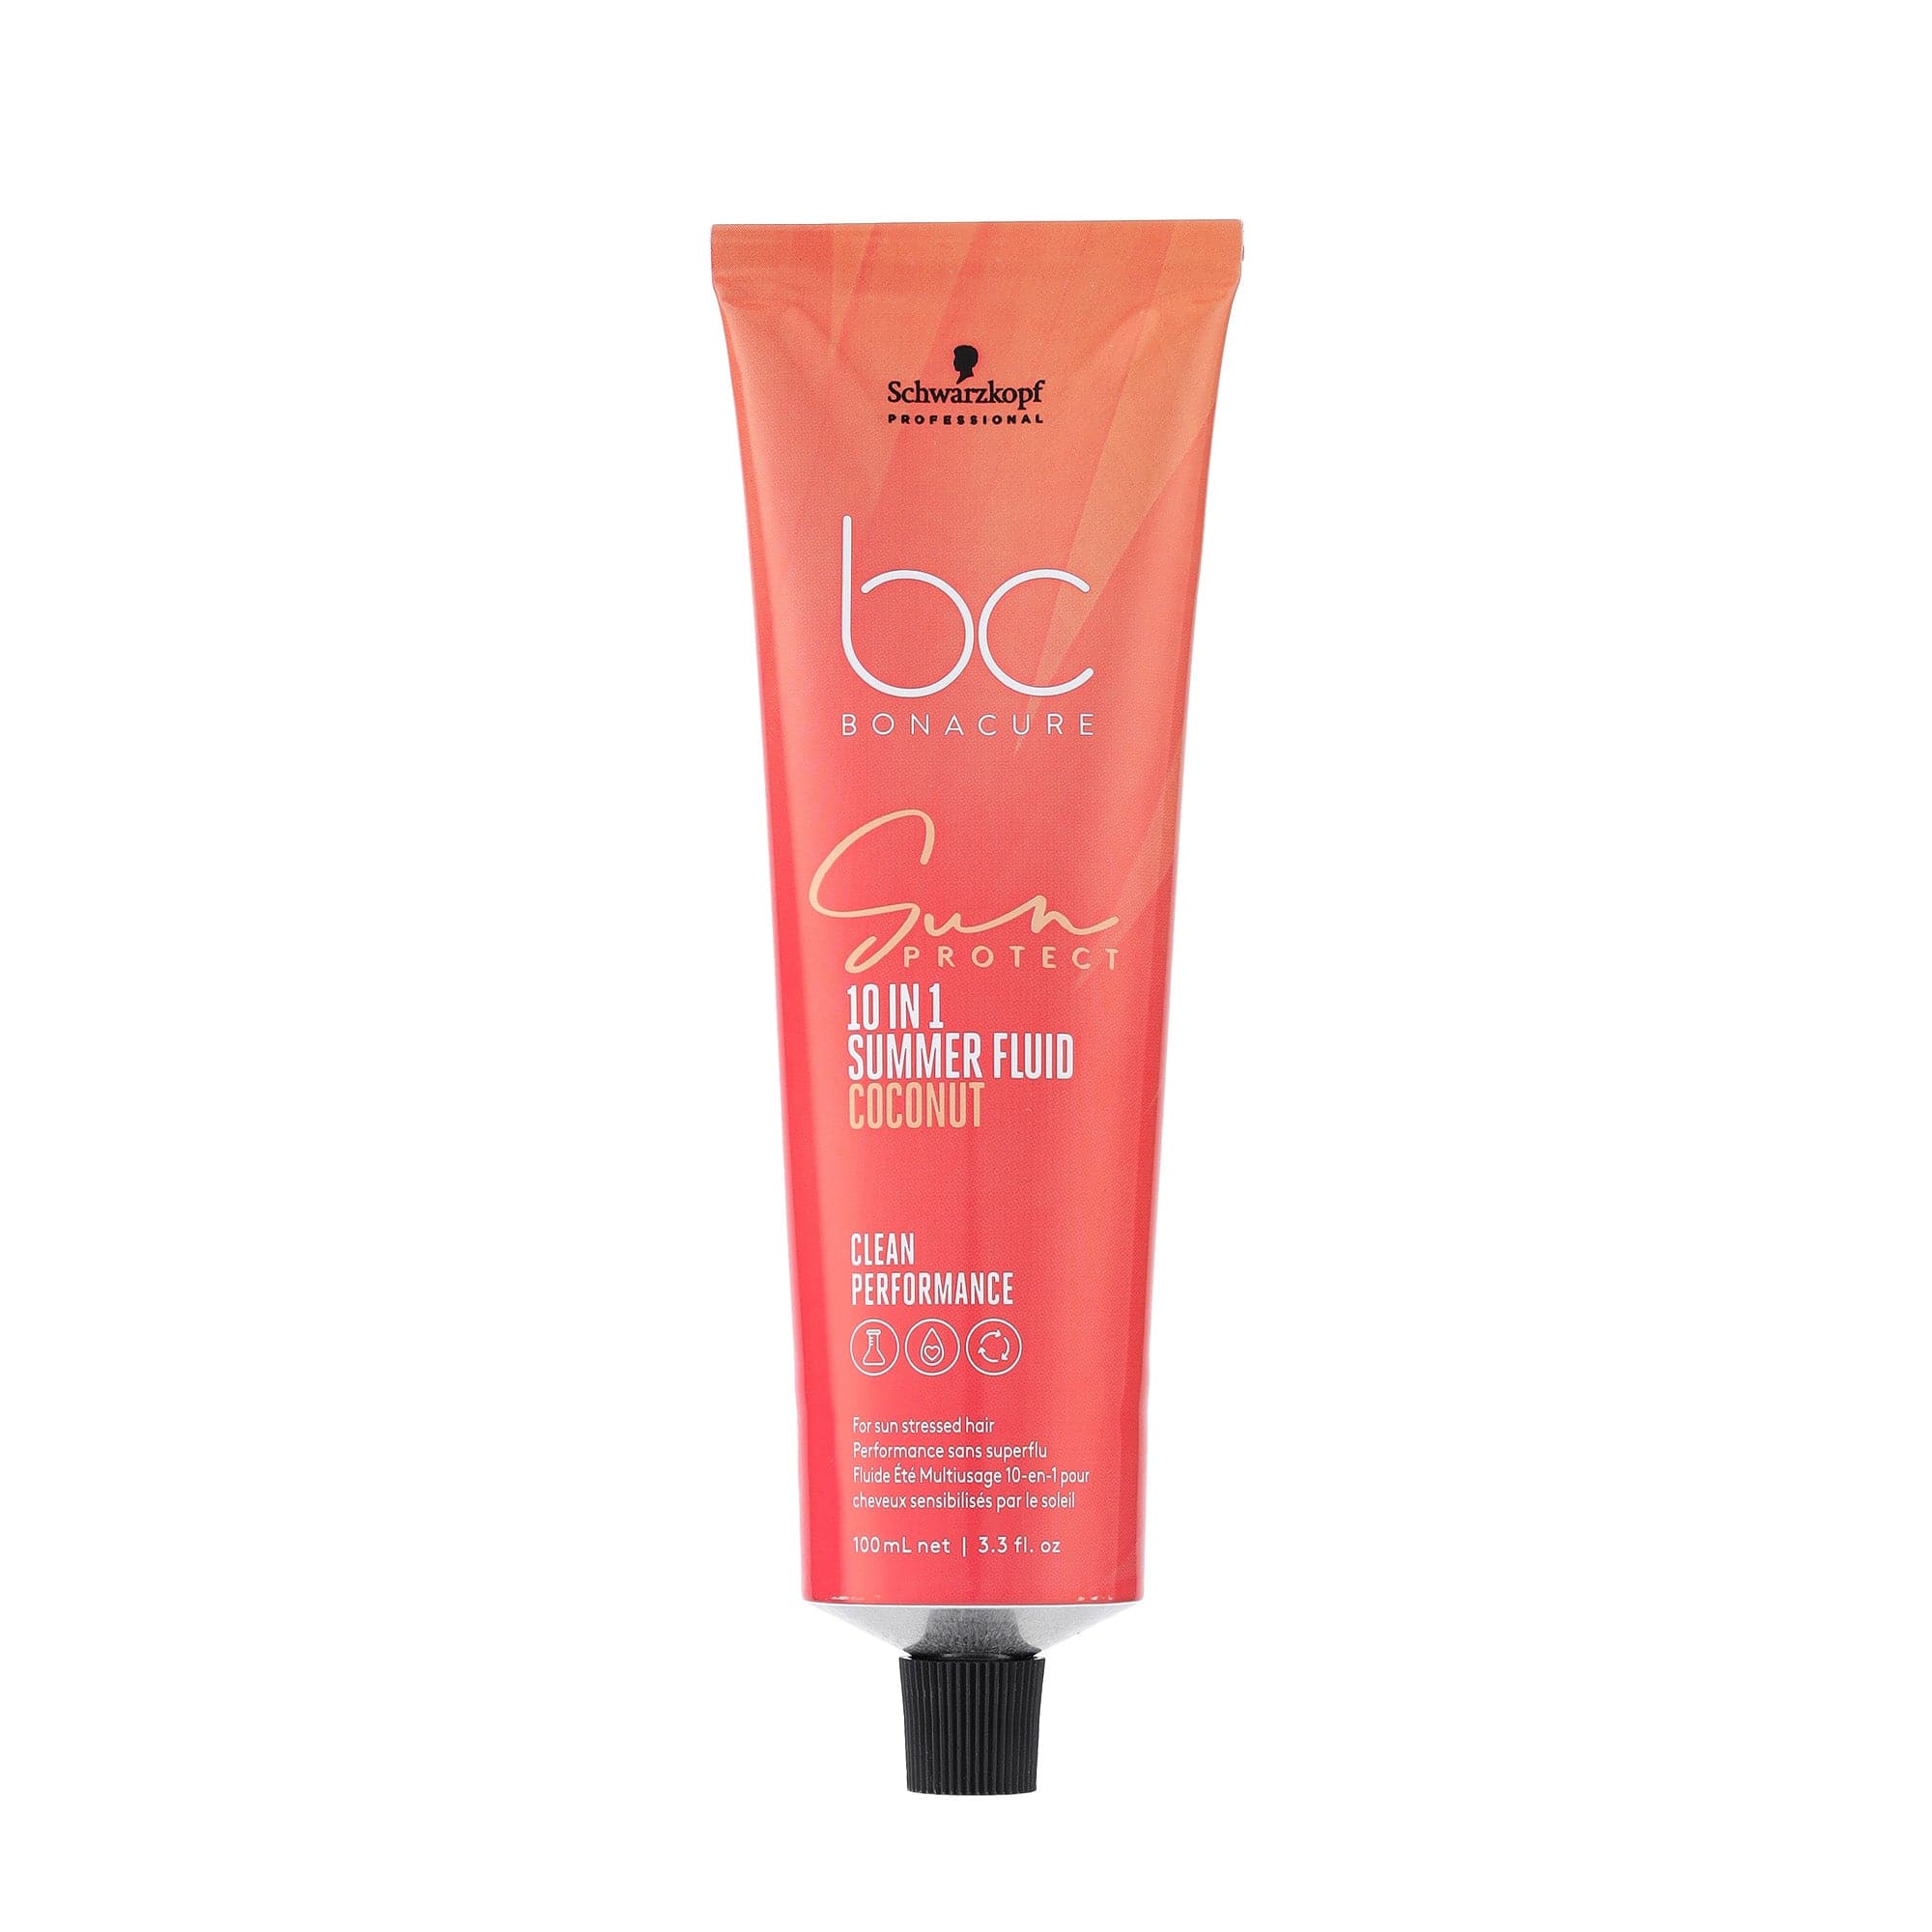 Bonacure Tratamiento Bonacure Sun Protect Fluido de Verano 10en1 100ml Roberta Beauty Club Tienda Online Productos de Peluqueria